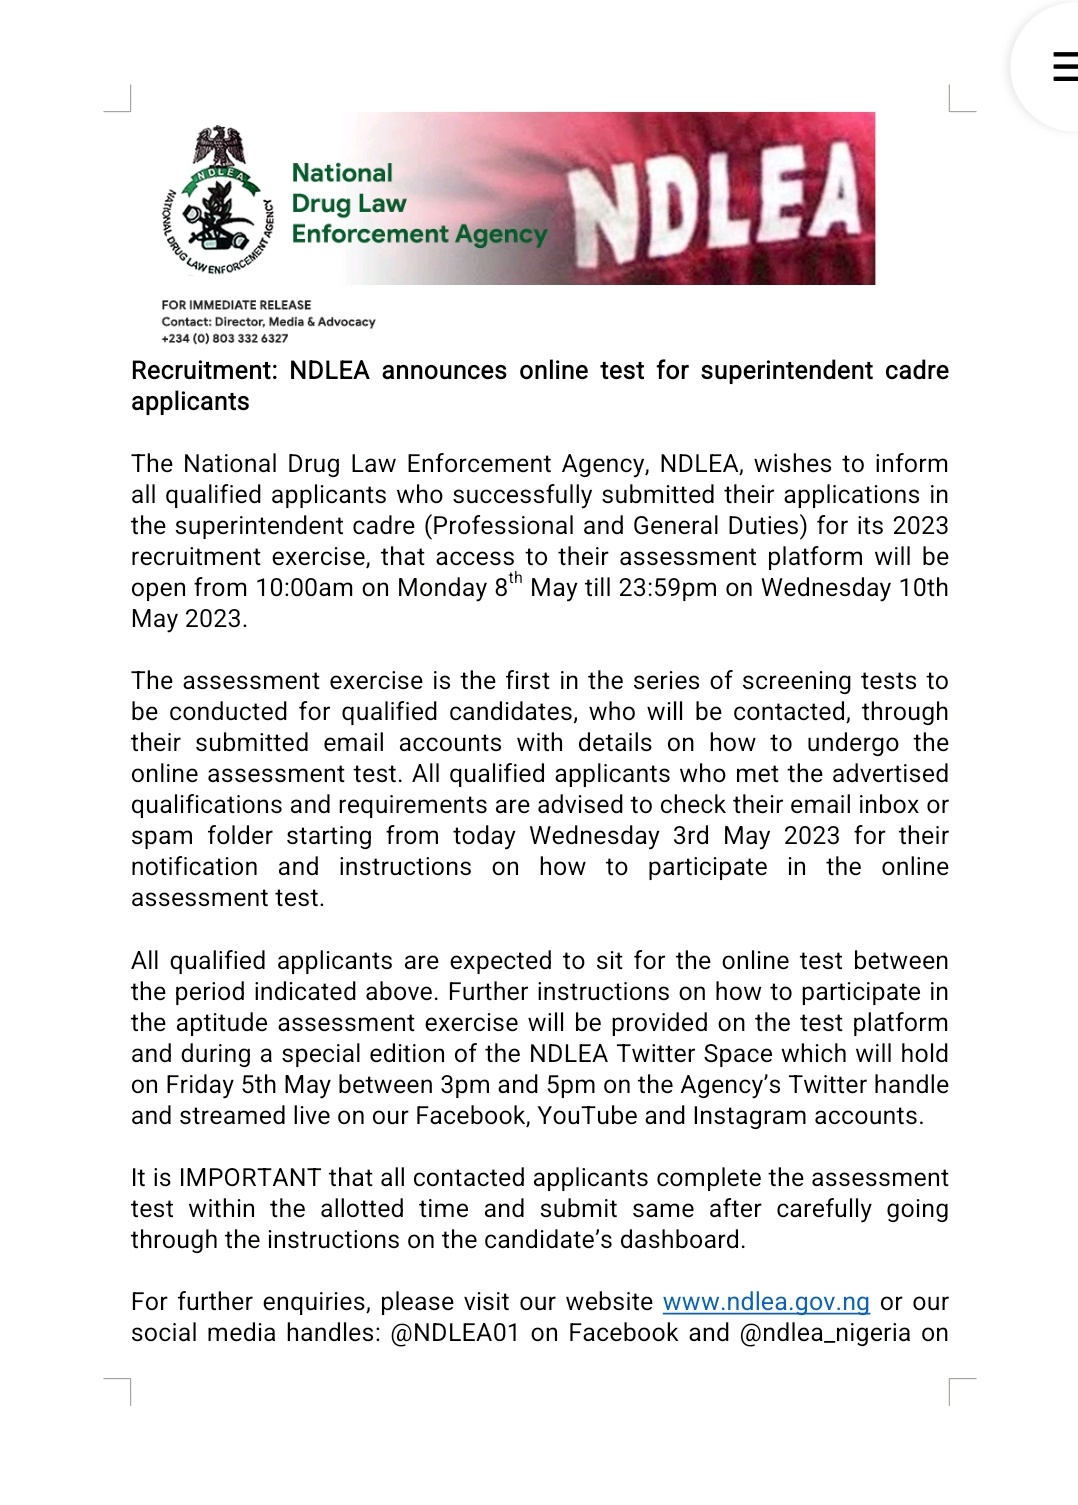 NDLEA Recruitment Update: assessment platform will be open from 10:00am on Monday - NDLEA Officials